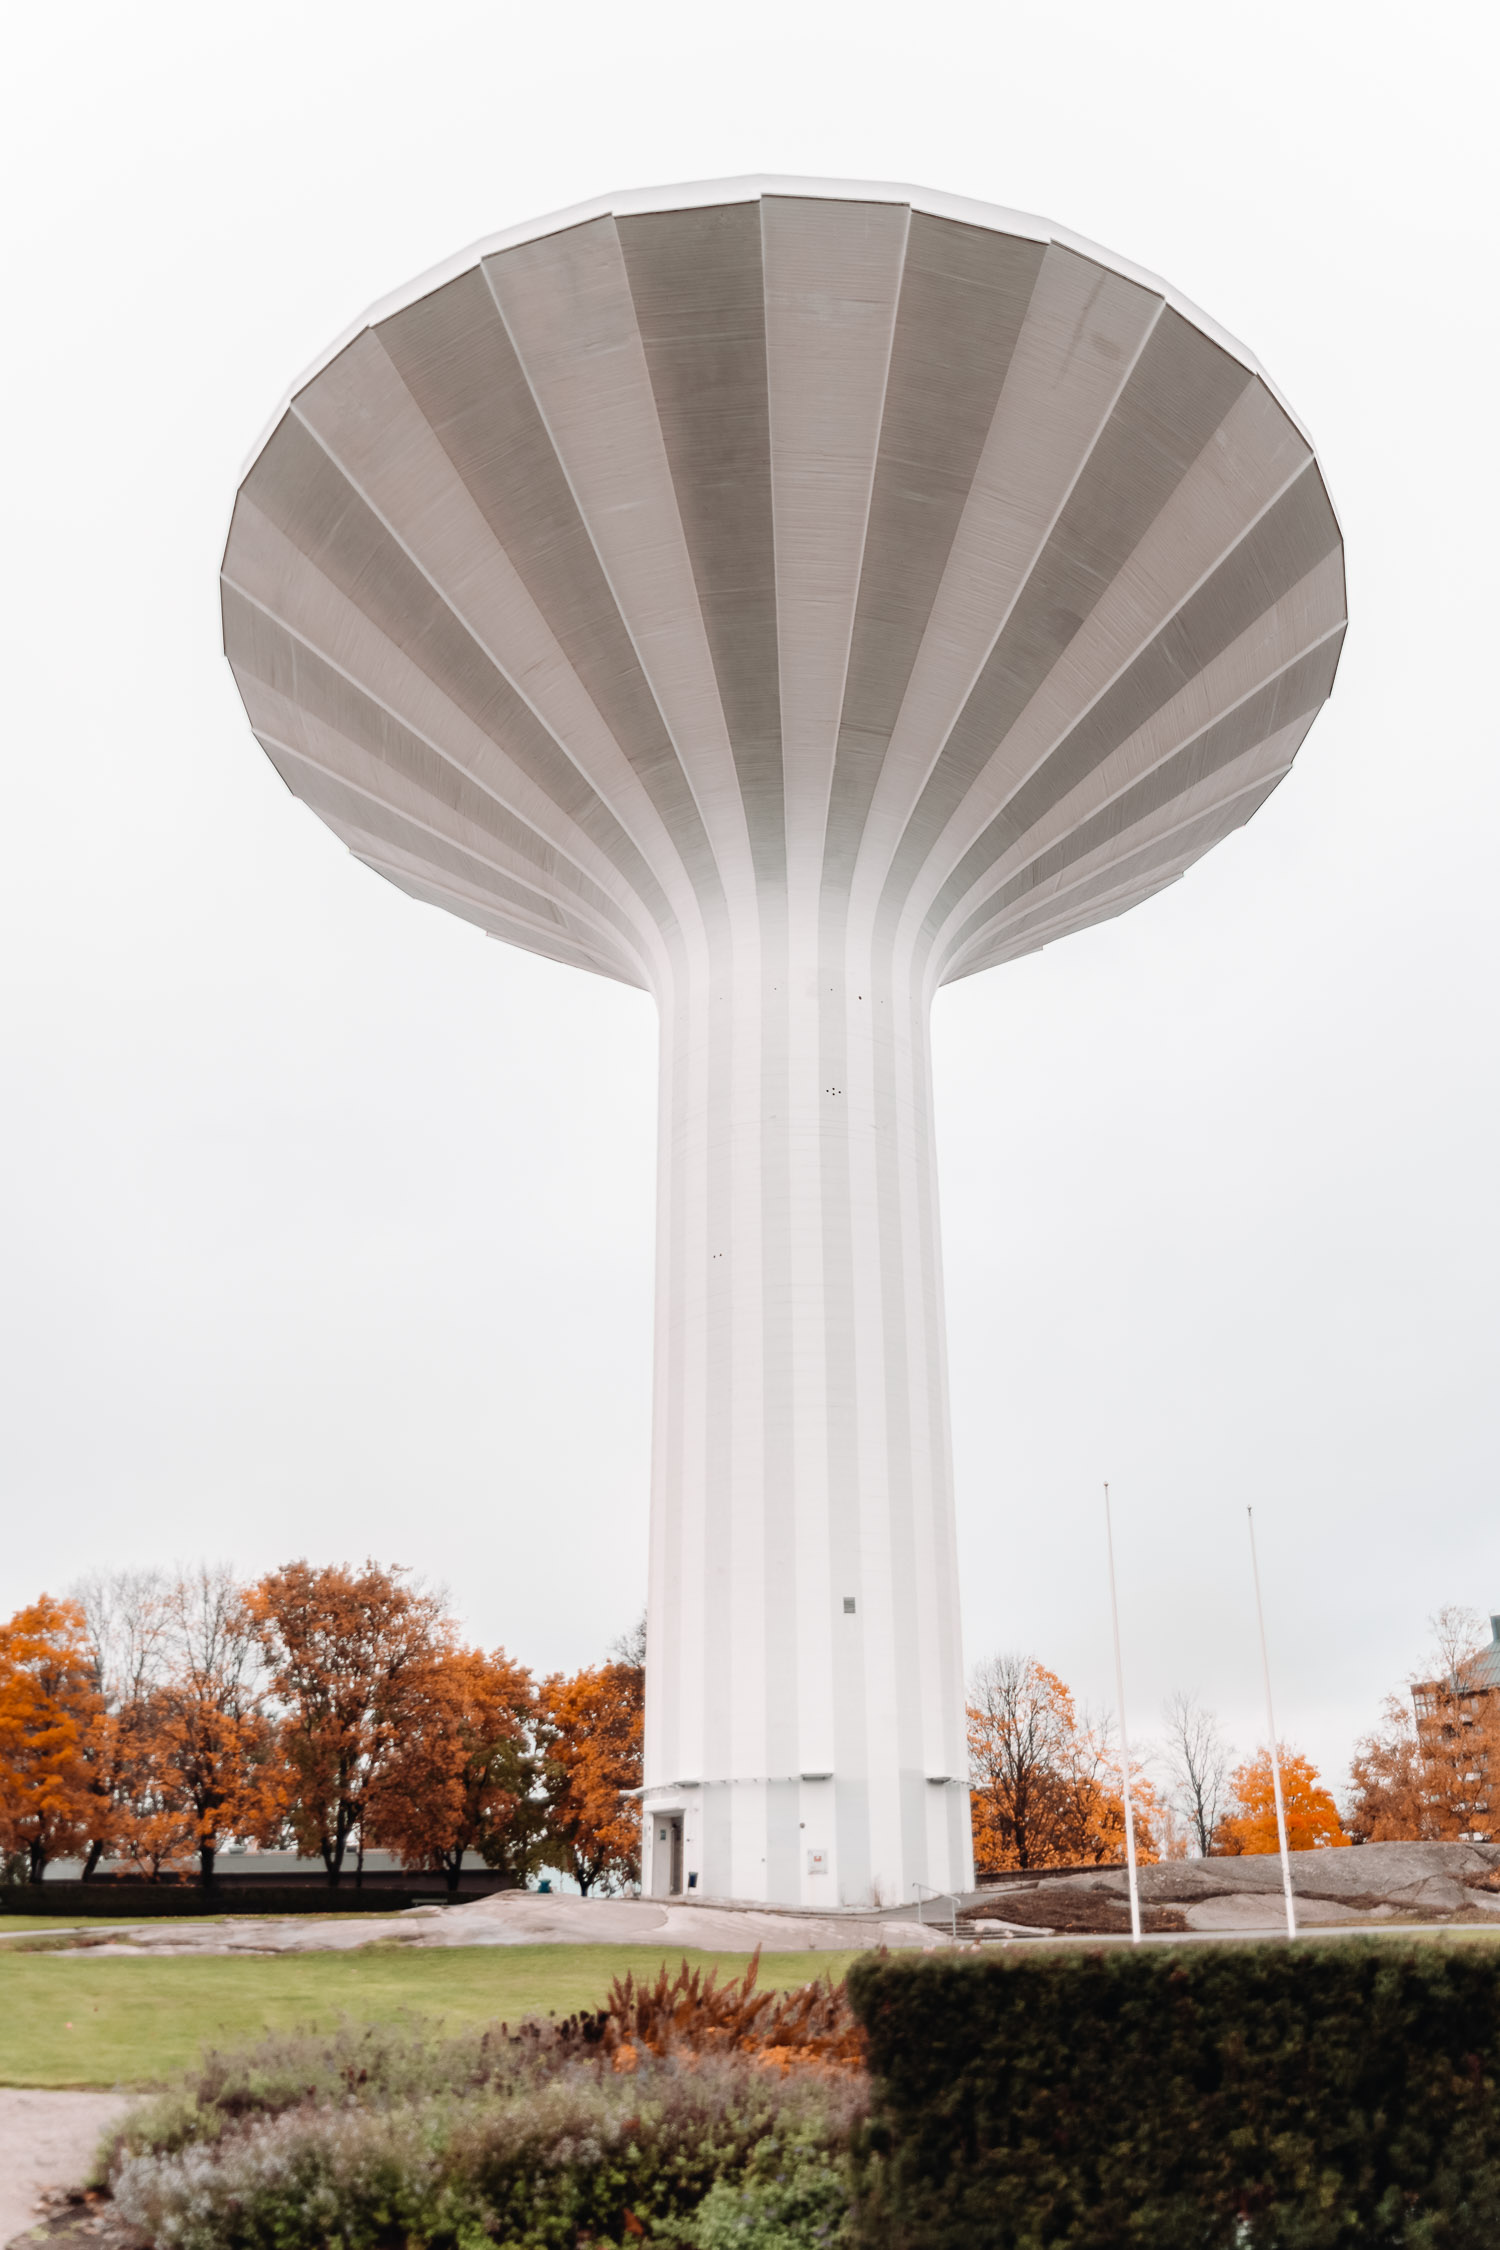 The iconic water tower Svampen in Örebro